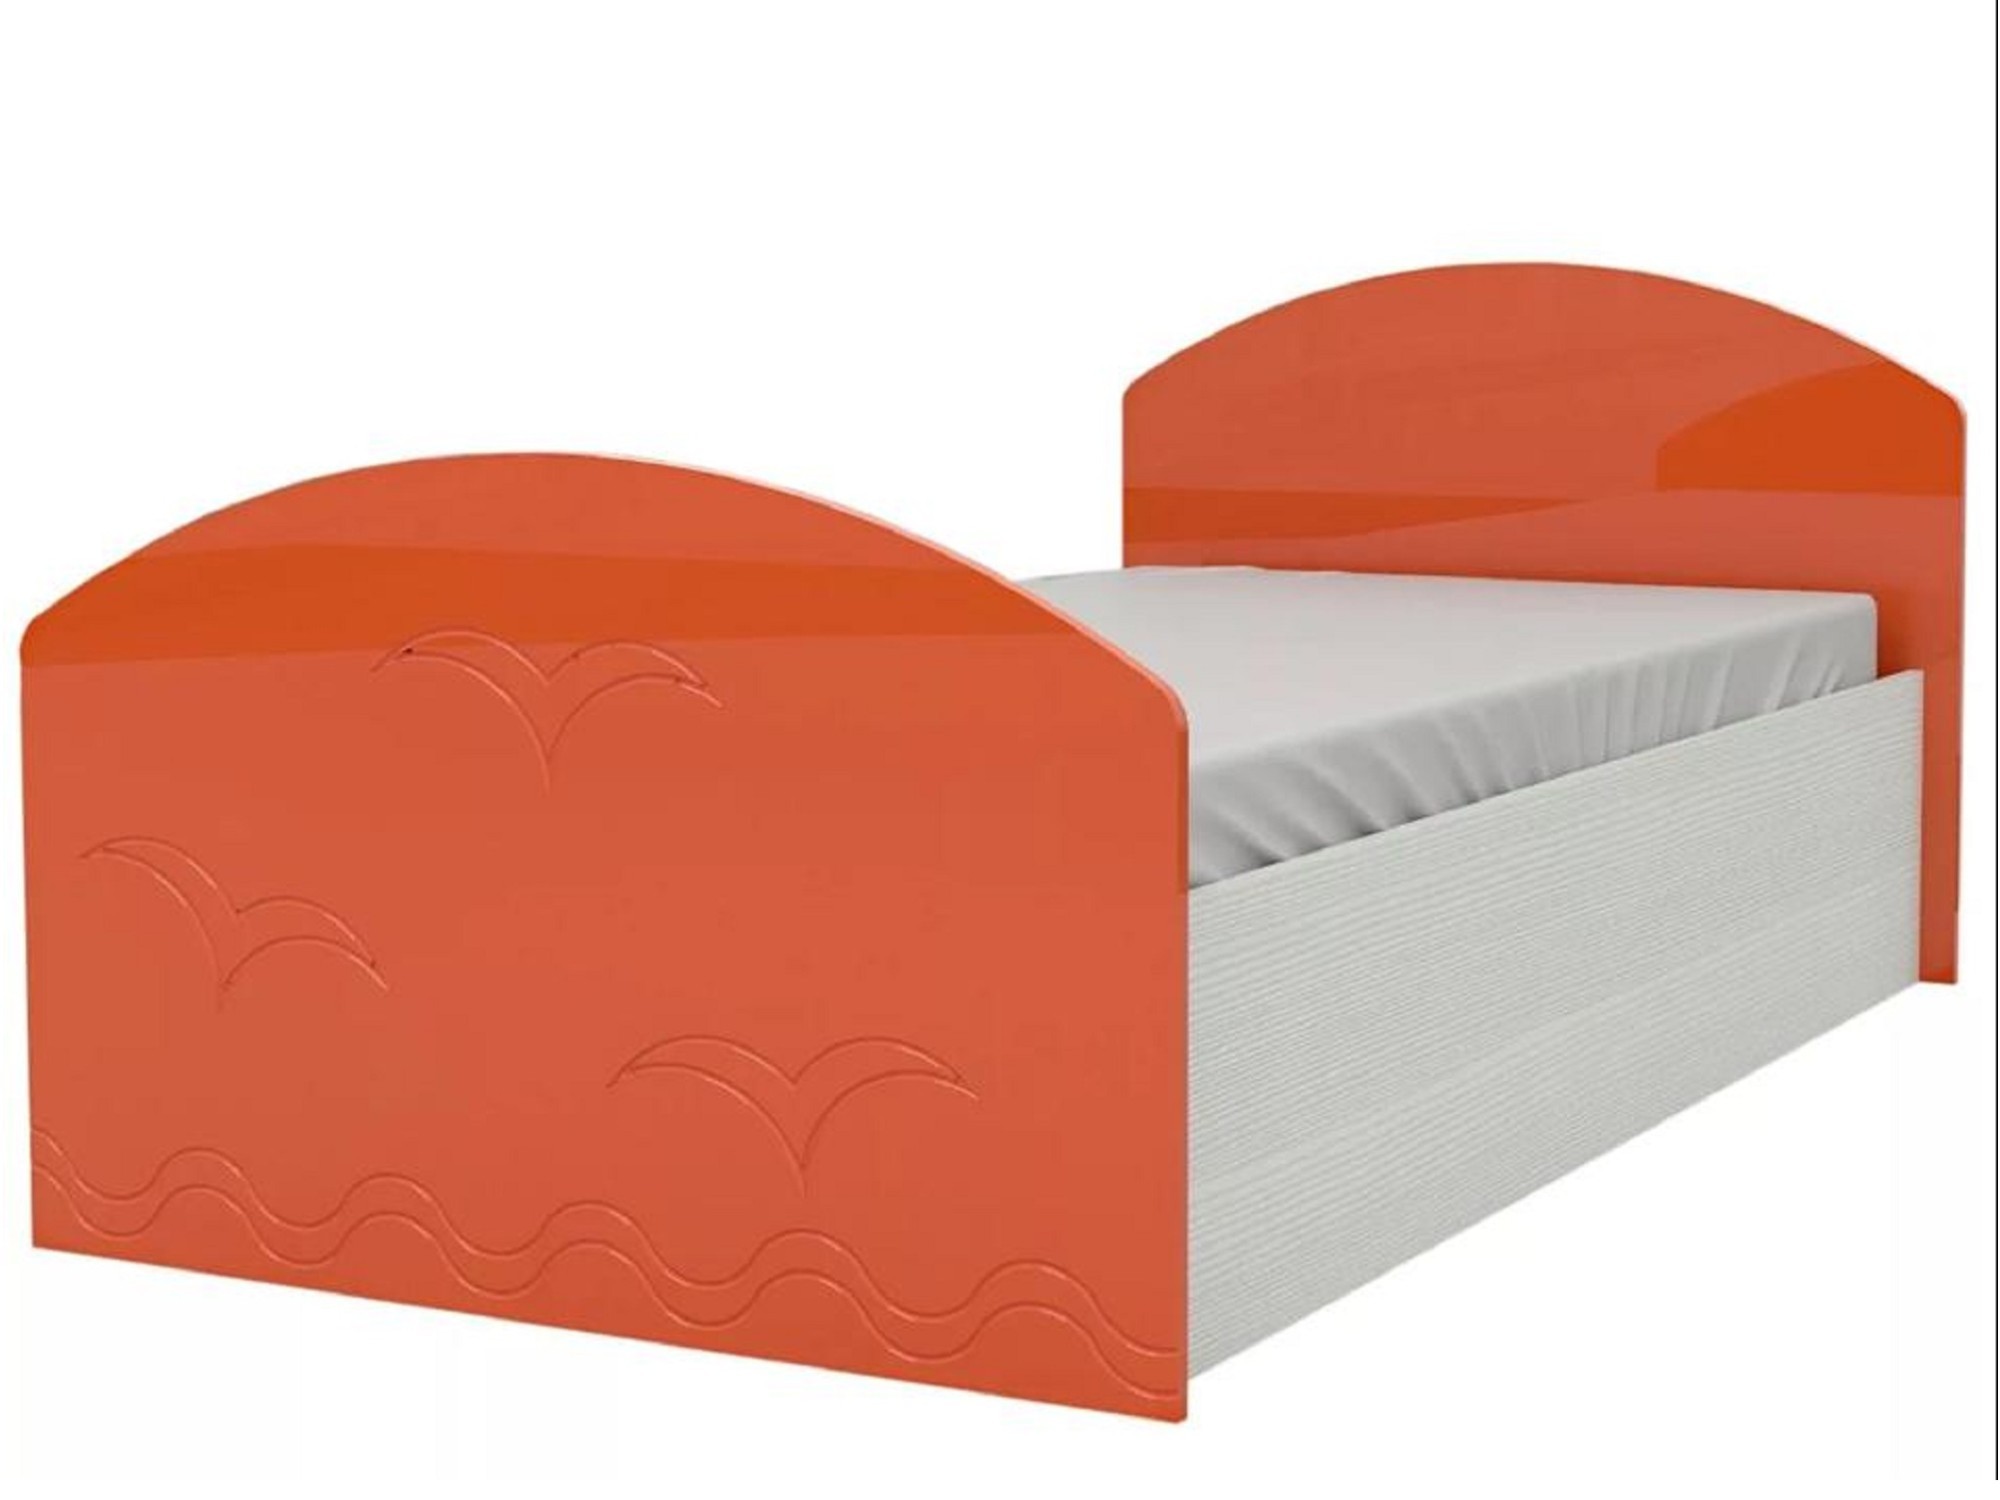 Юниор-2 Детская кровать 80, металлик (Оранжевый металлик, Дуб белёный) Оранжевый металлик, МДФ, ЛДСП юниор 1 двухъярусная кровать 80 бирюза металлик дуб белёный бирюза металлик зеленый лдсп